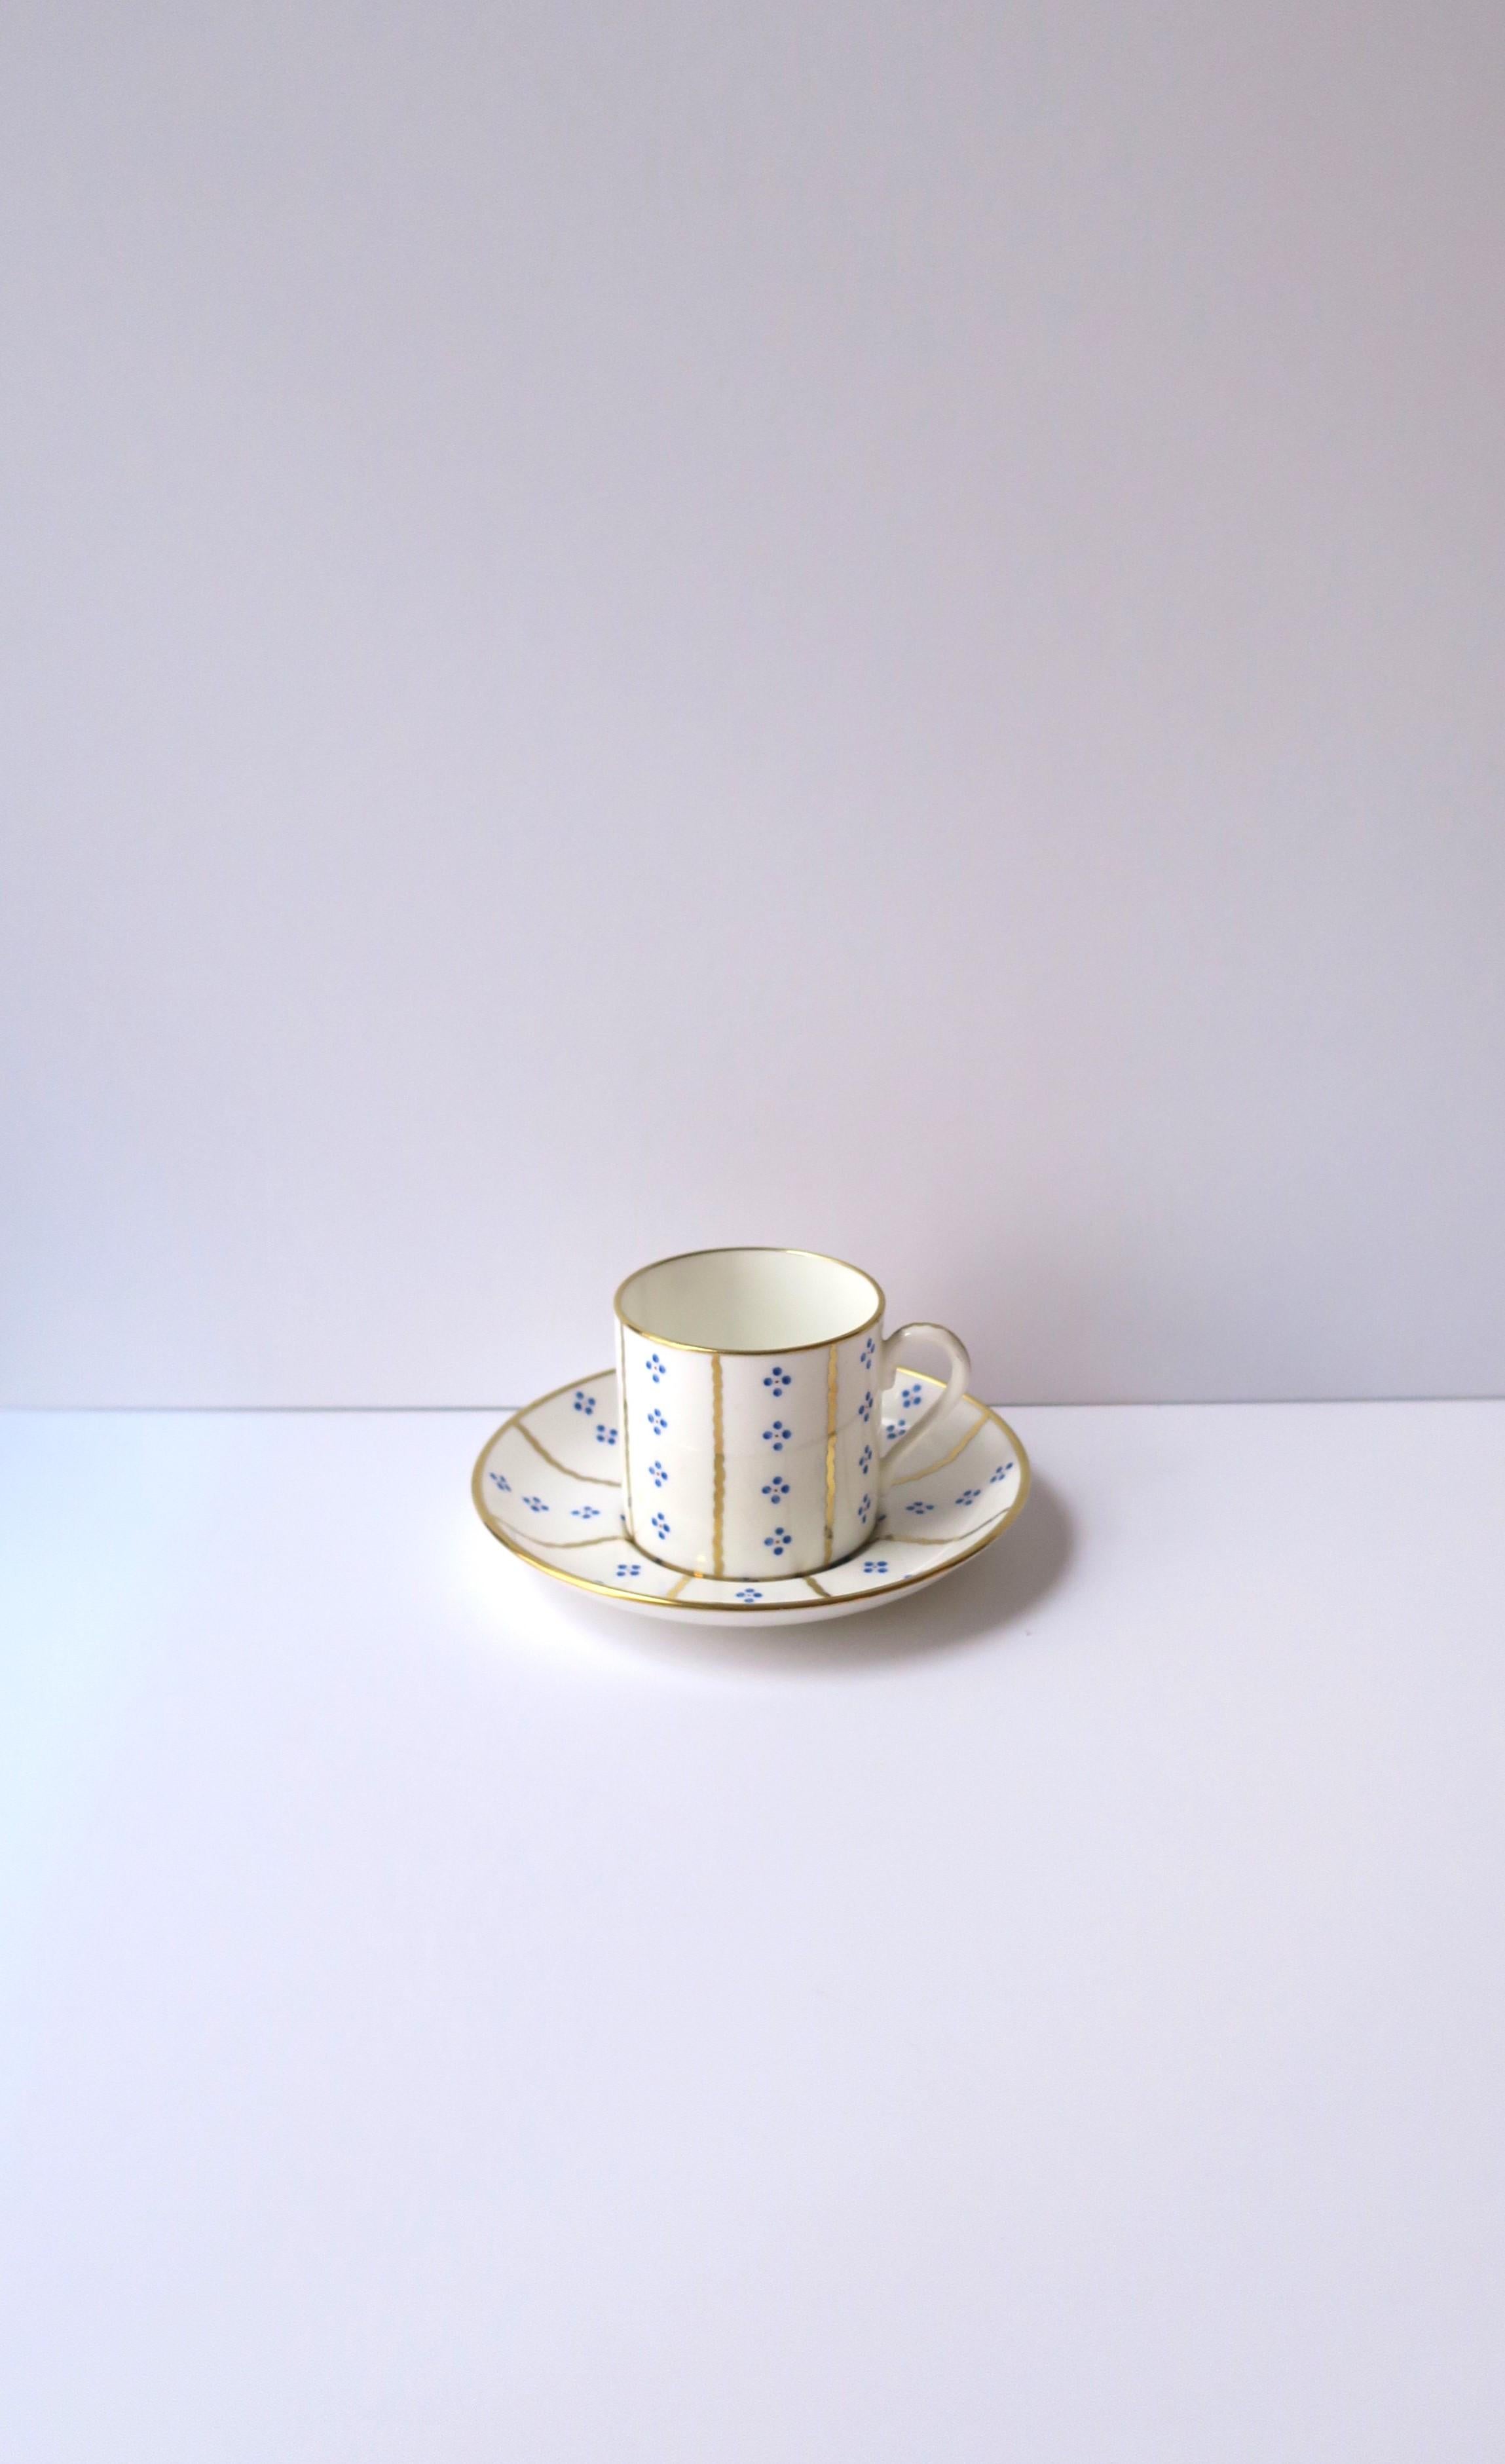 Wunderschönes Set aus blauem und goldenem Porzellan mit Espresso- oder Teetasse und Untertasse, exklusiv für das Luxusunternehmen Tiffany & Co New York, von Hammersley, ca. Mitte des 20. Jahrhunderts, England. Mit Markierungsspuren auf der